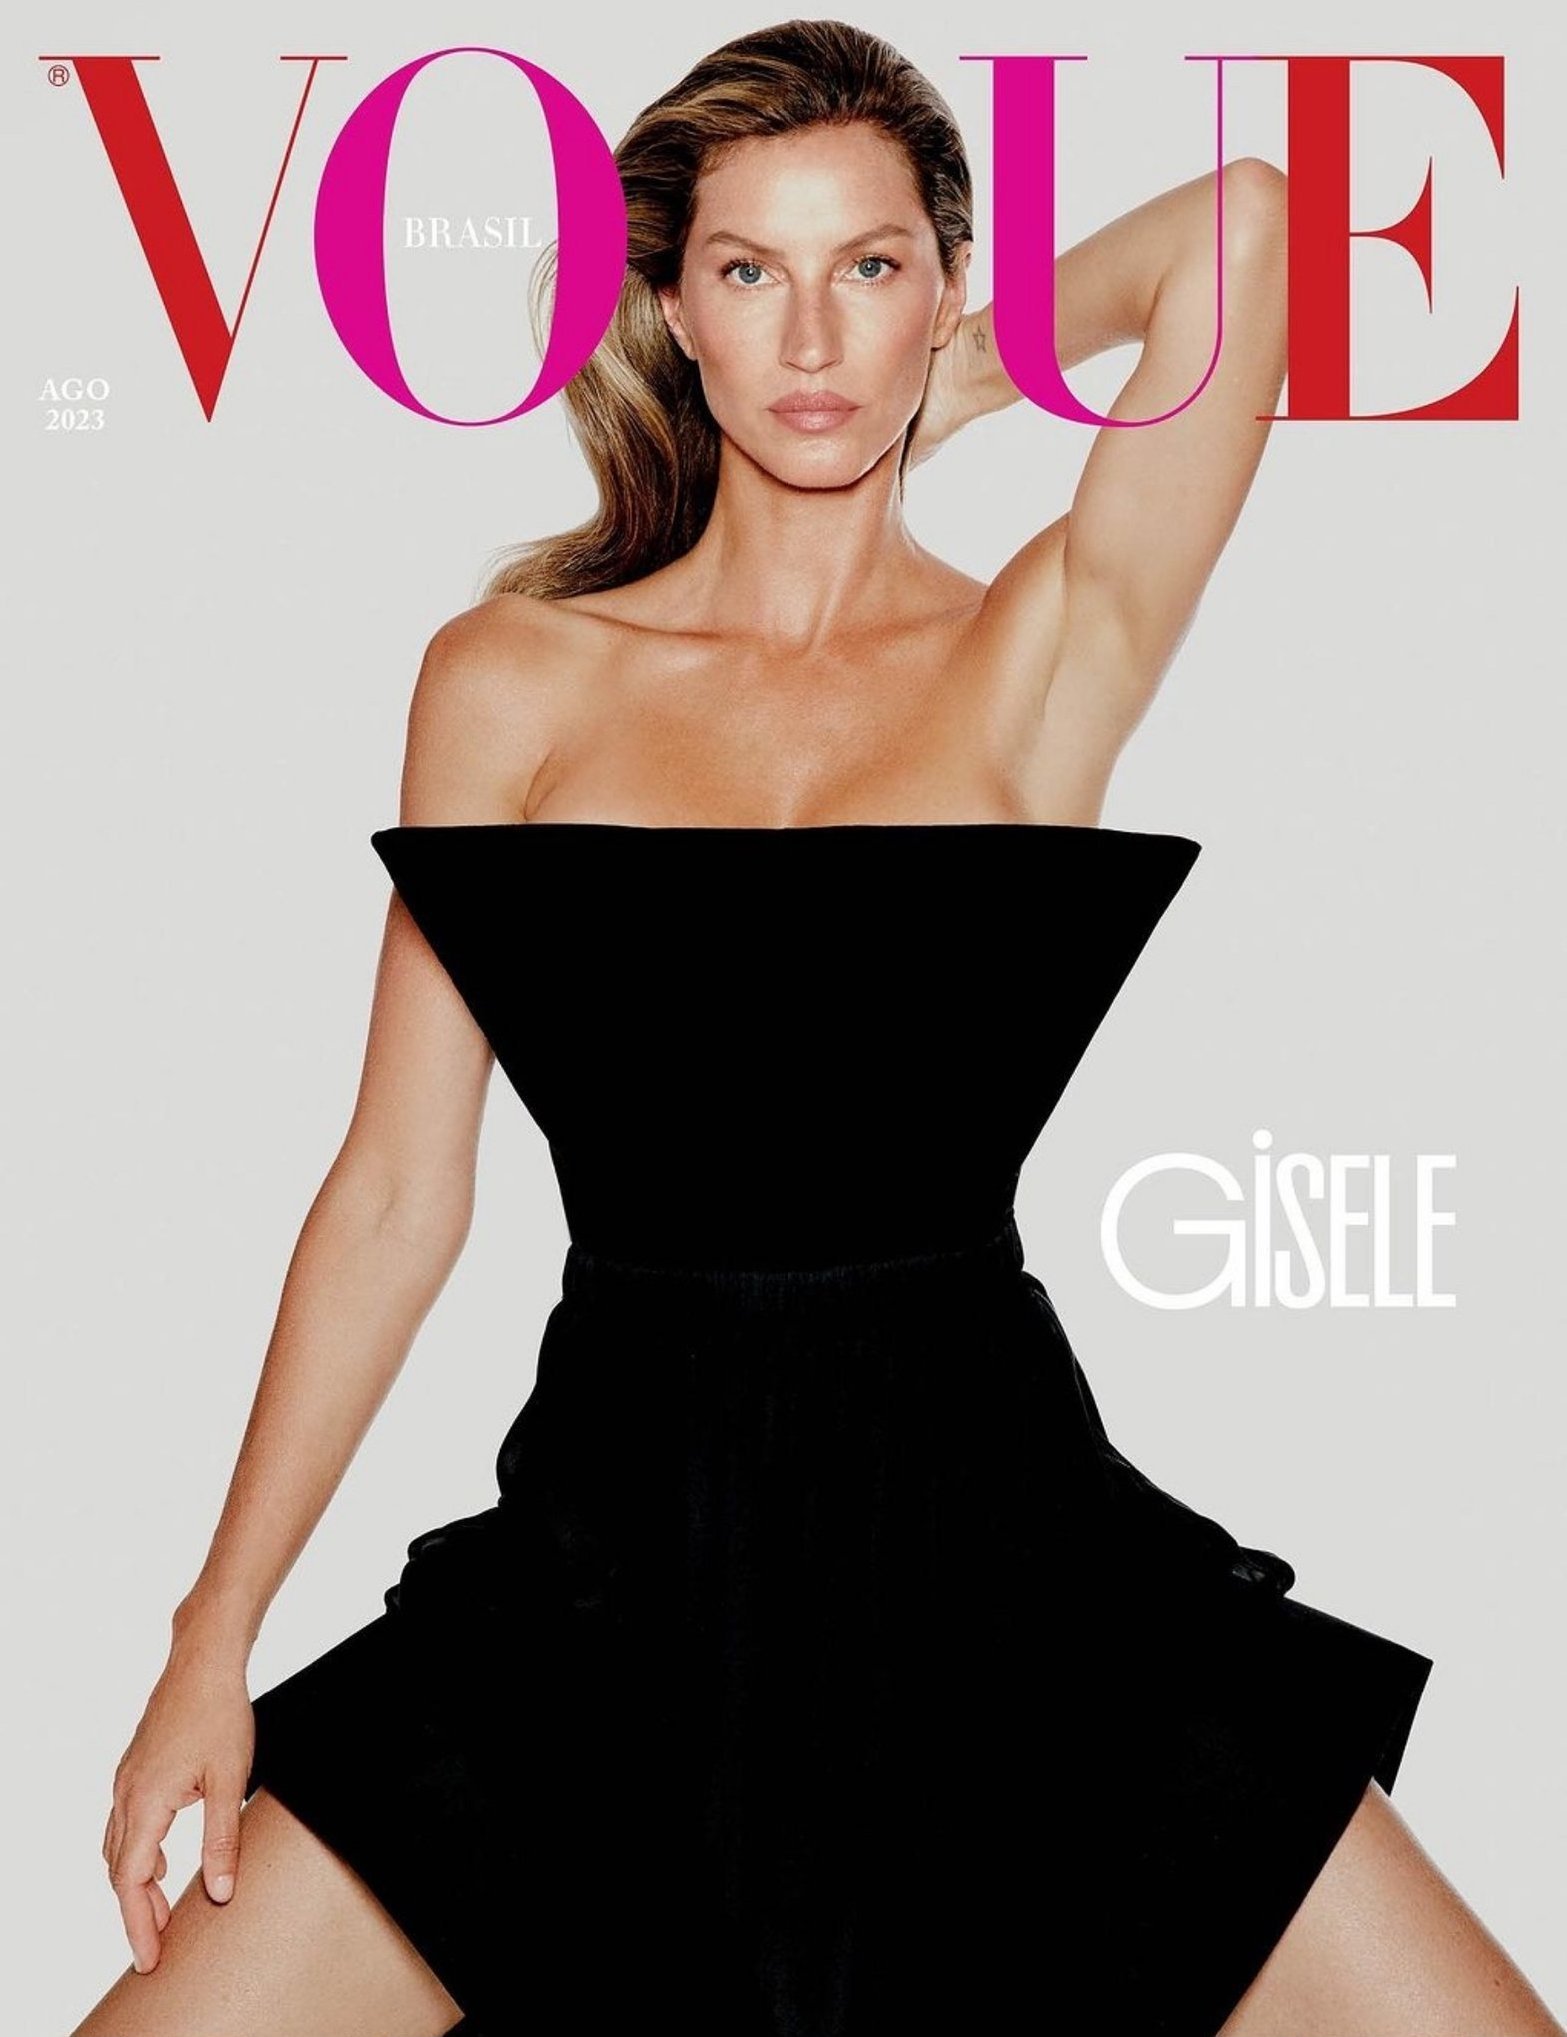 Vogue Brazil August 2023 Cover.jpeg